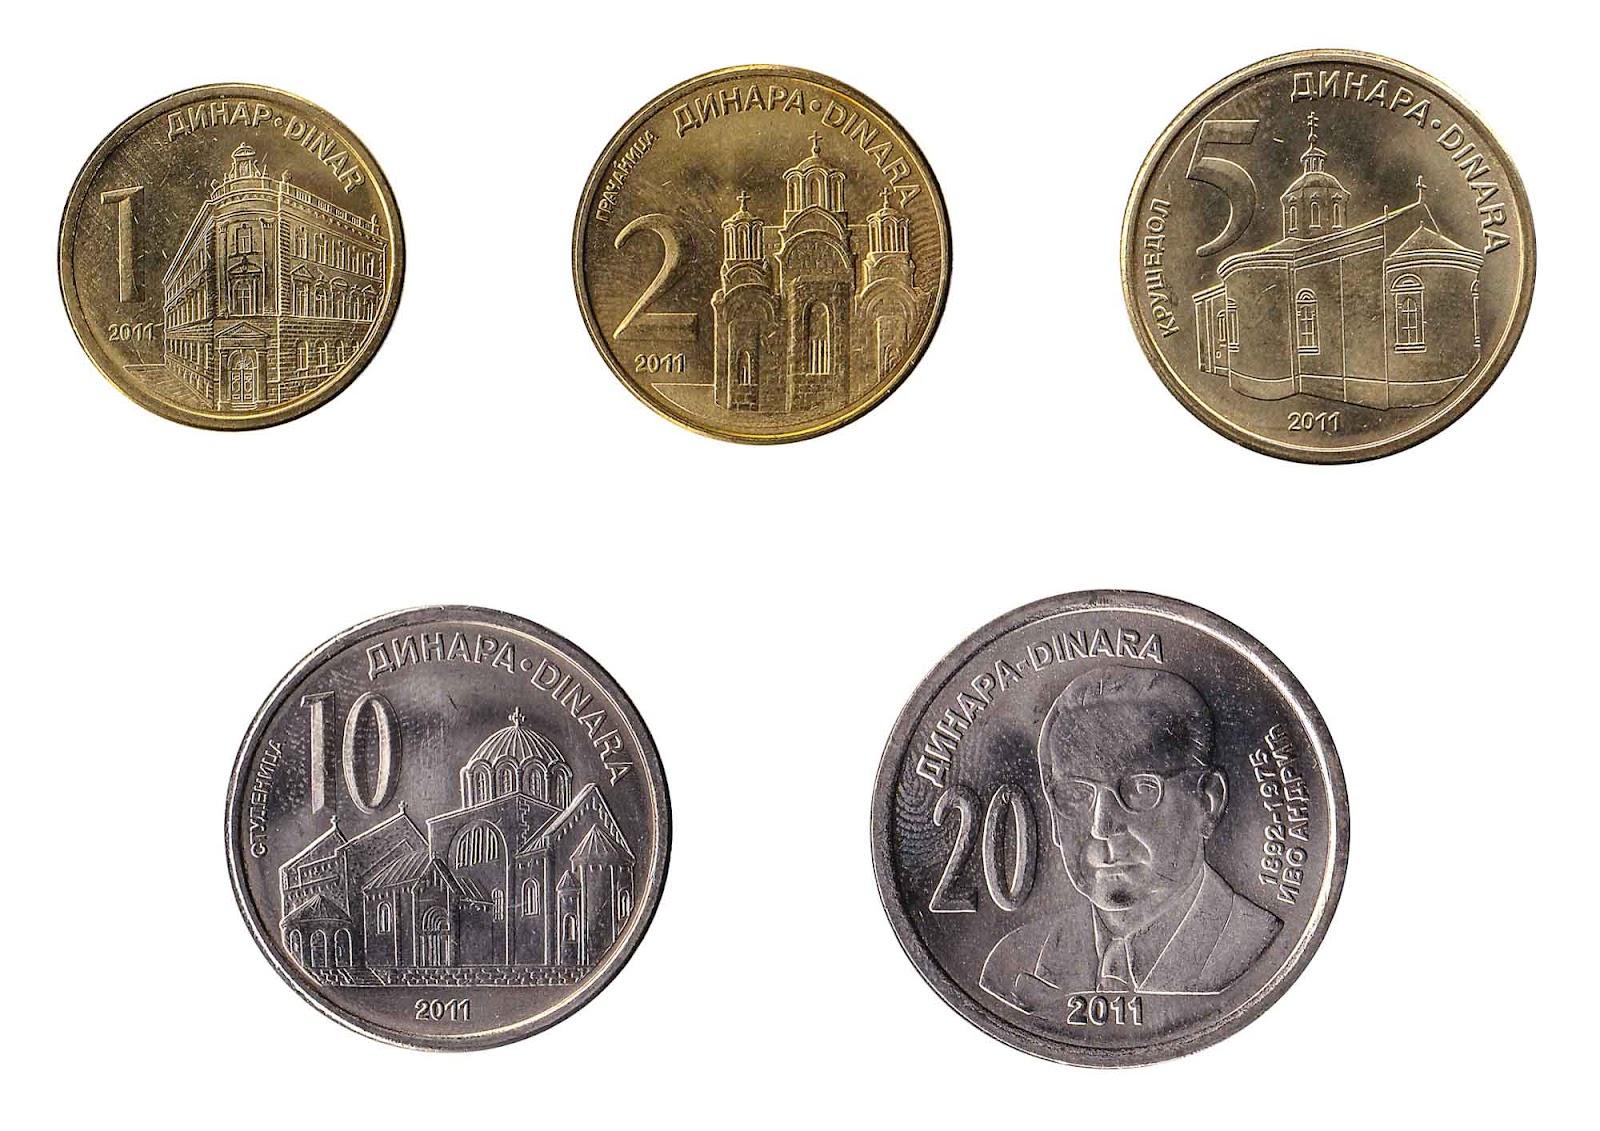 Serbian Dinar coin series